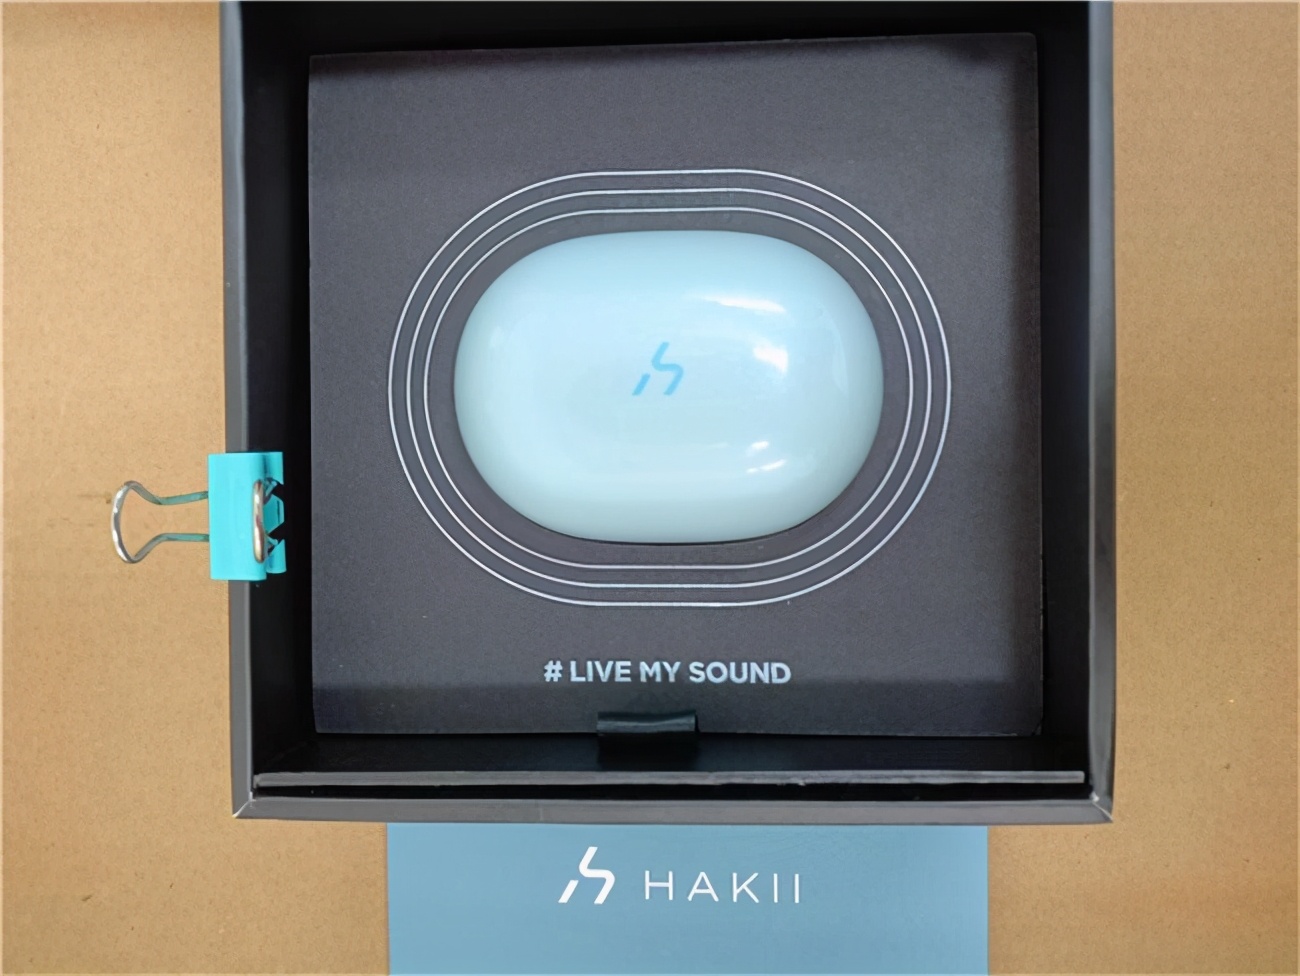 运动&音质追求者 HAKII ACTION 运动型蓝牙耳机测评报告